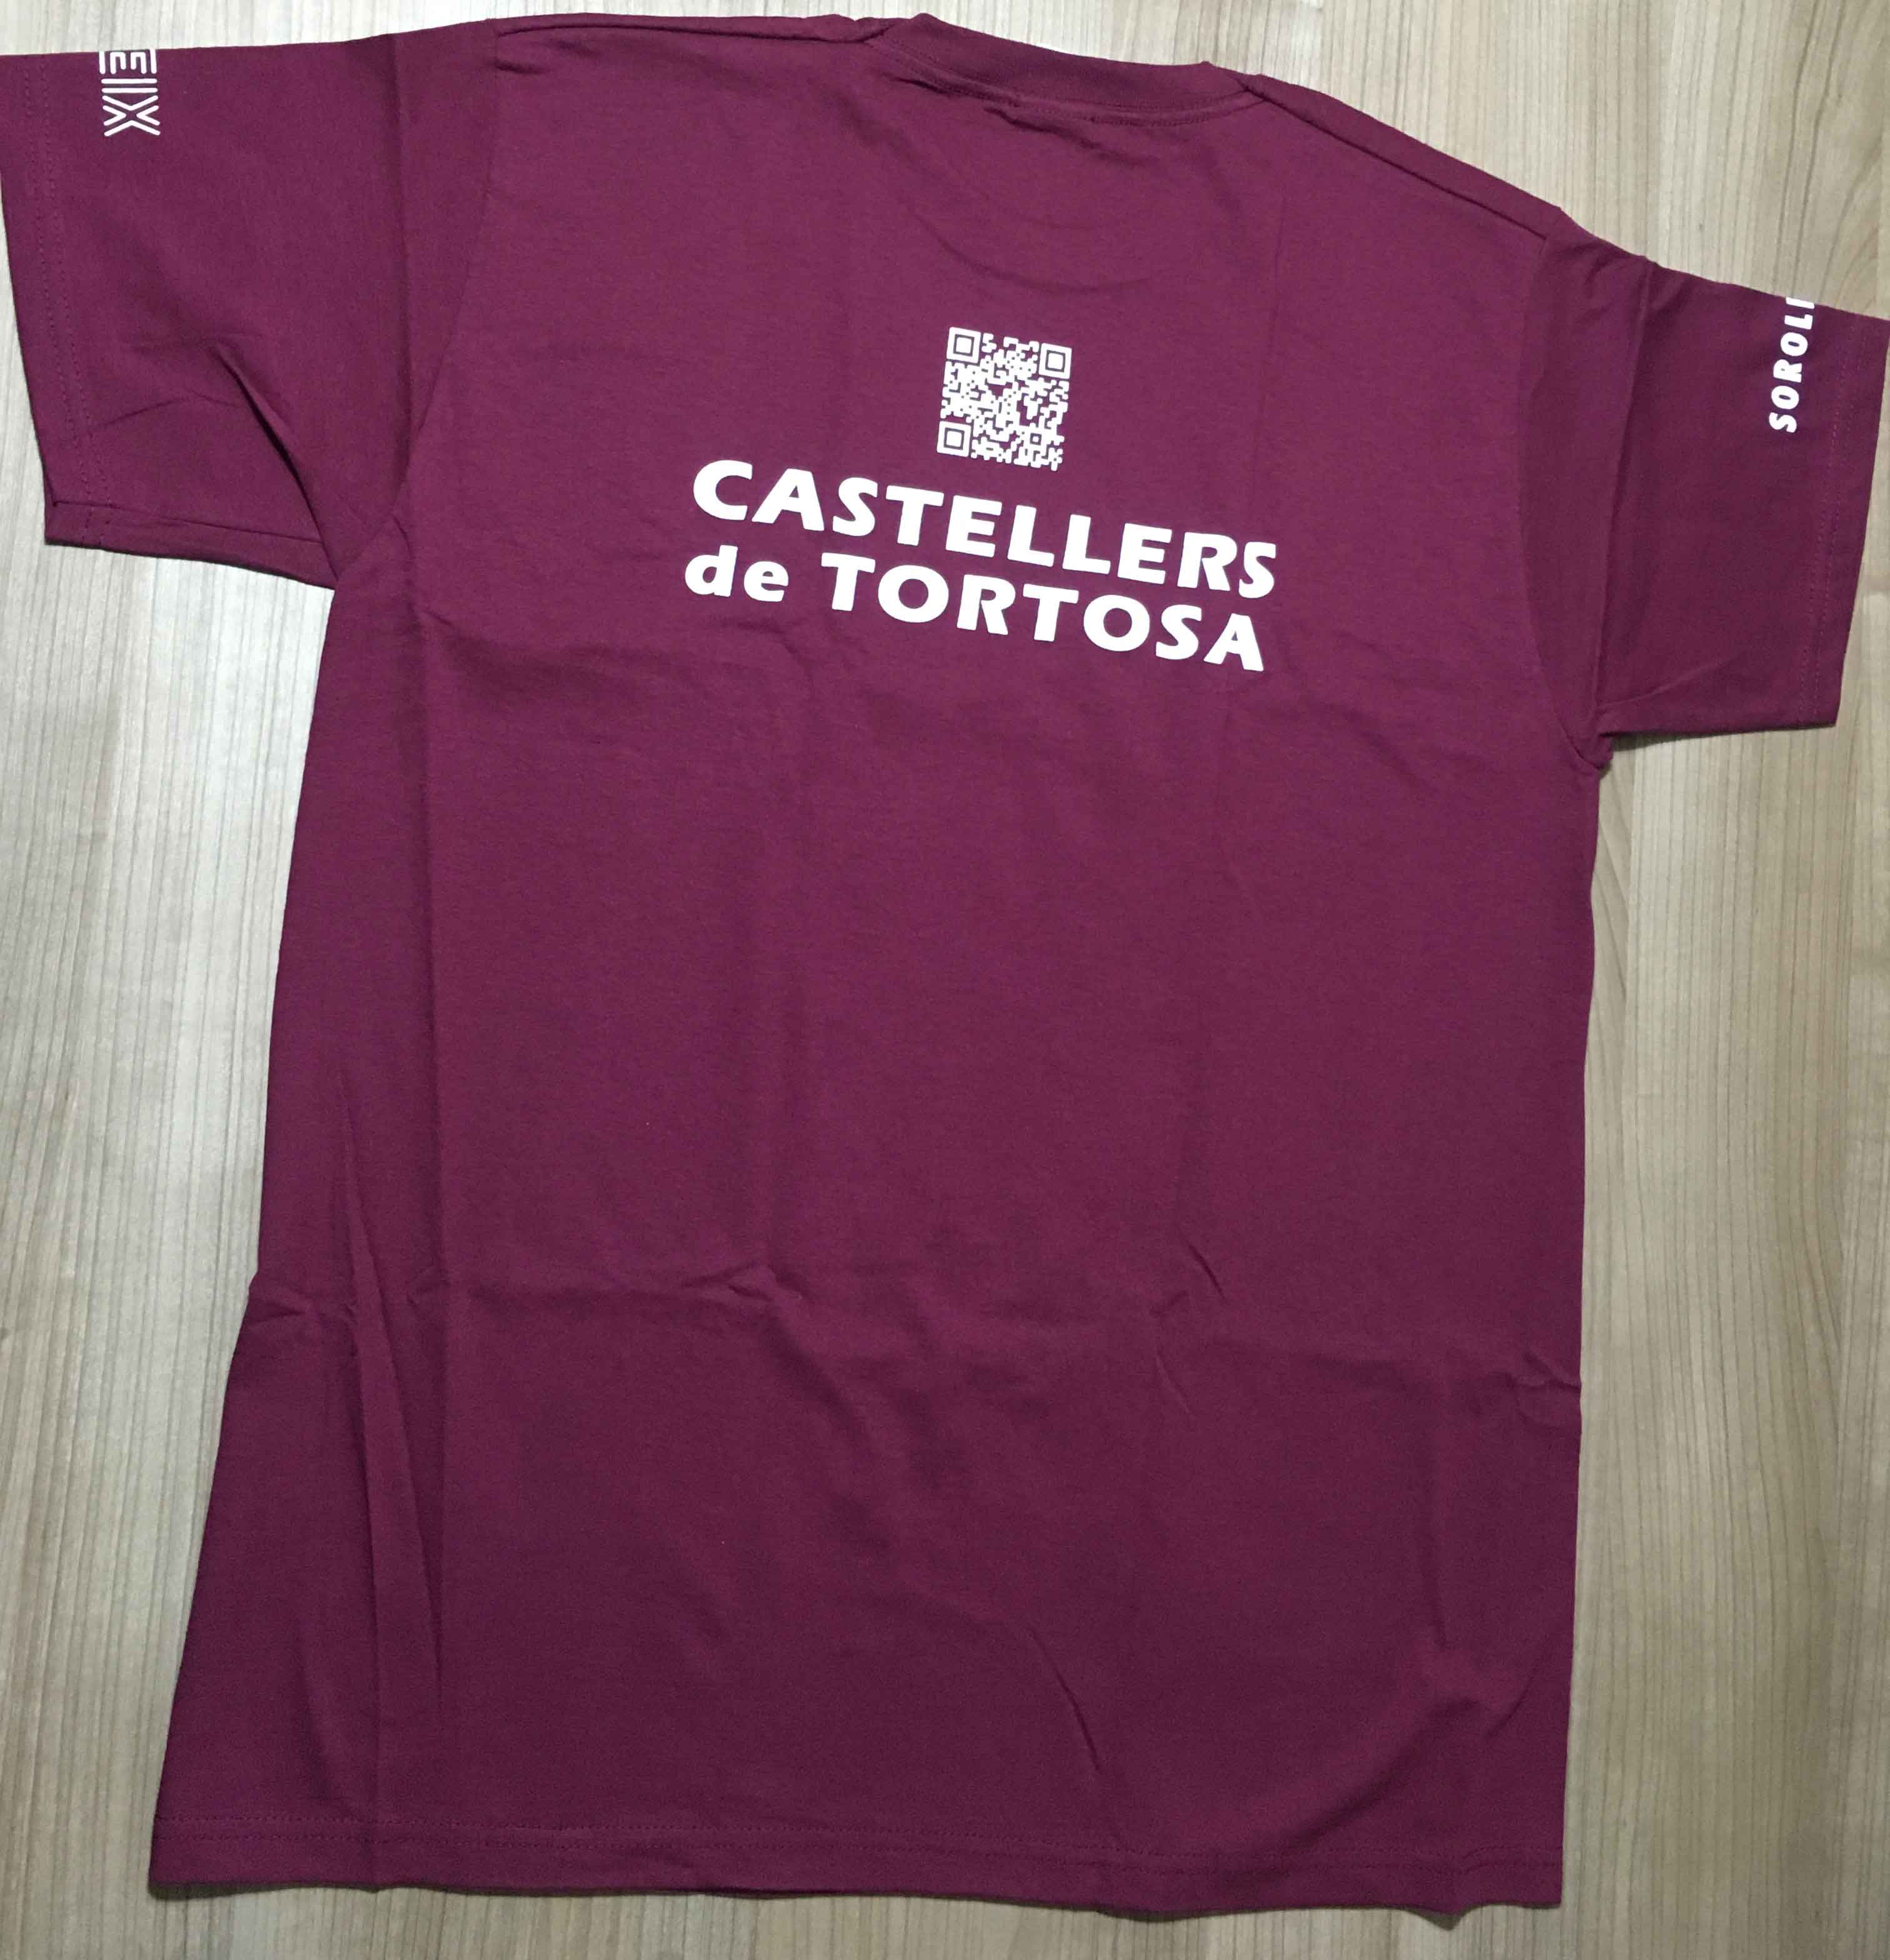 Detras de la camiseta dels Castellers de Tortosa